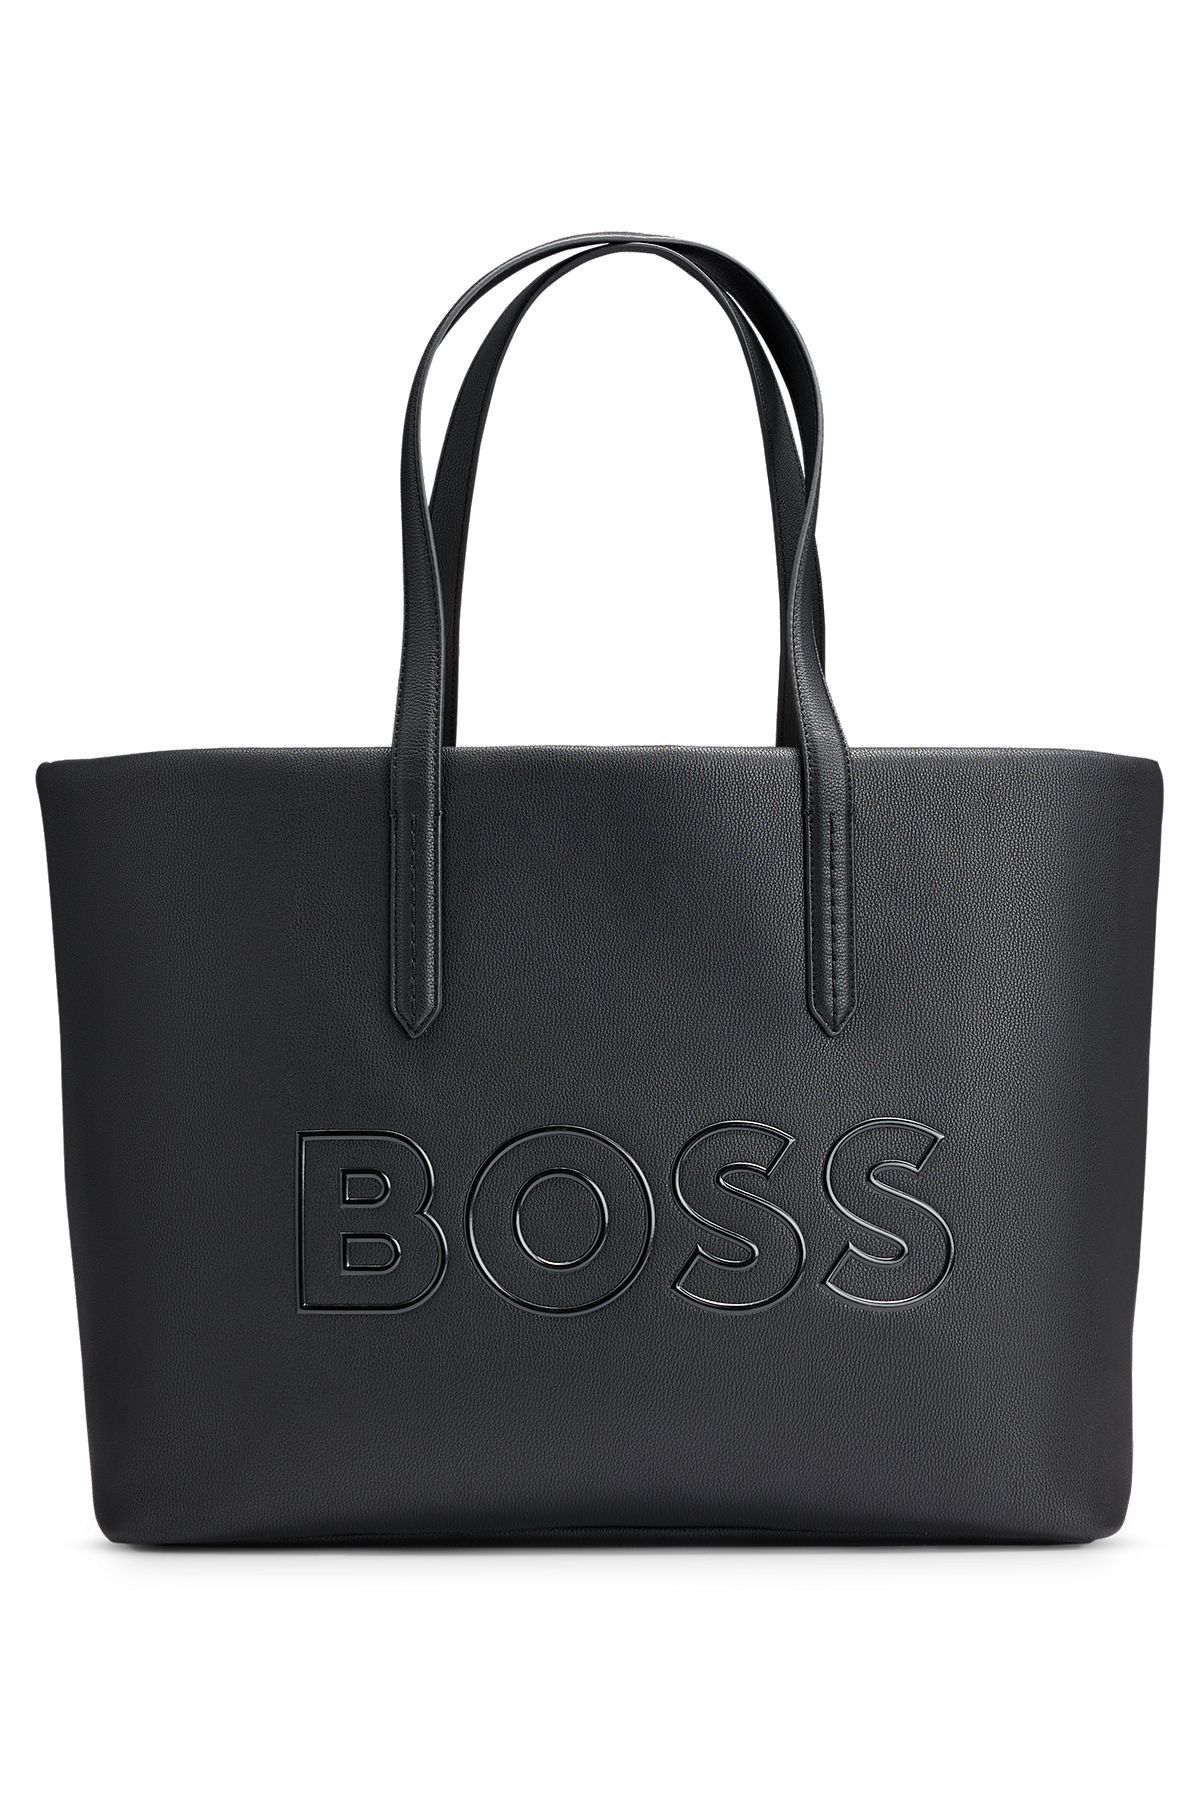 | HUGO Bags Women\'s BOSS